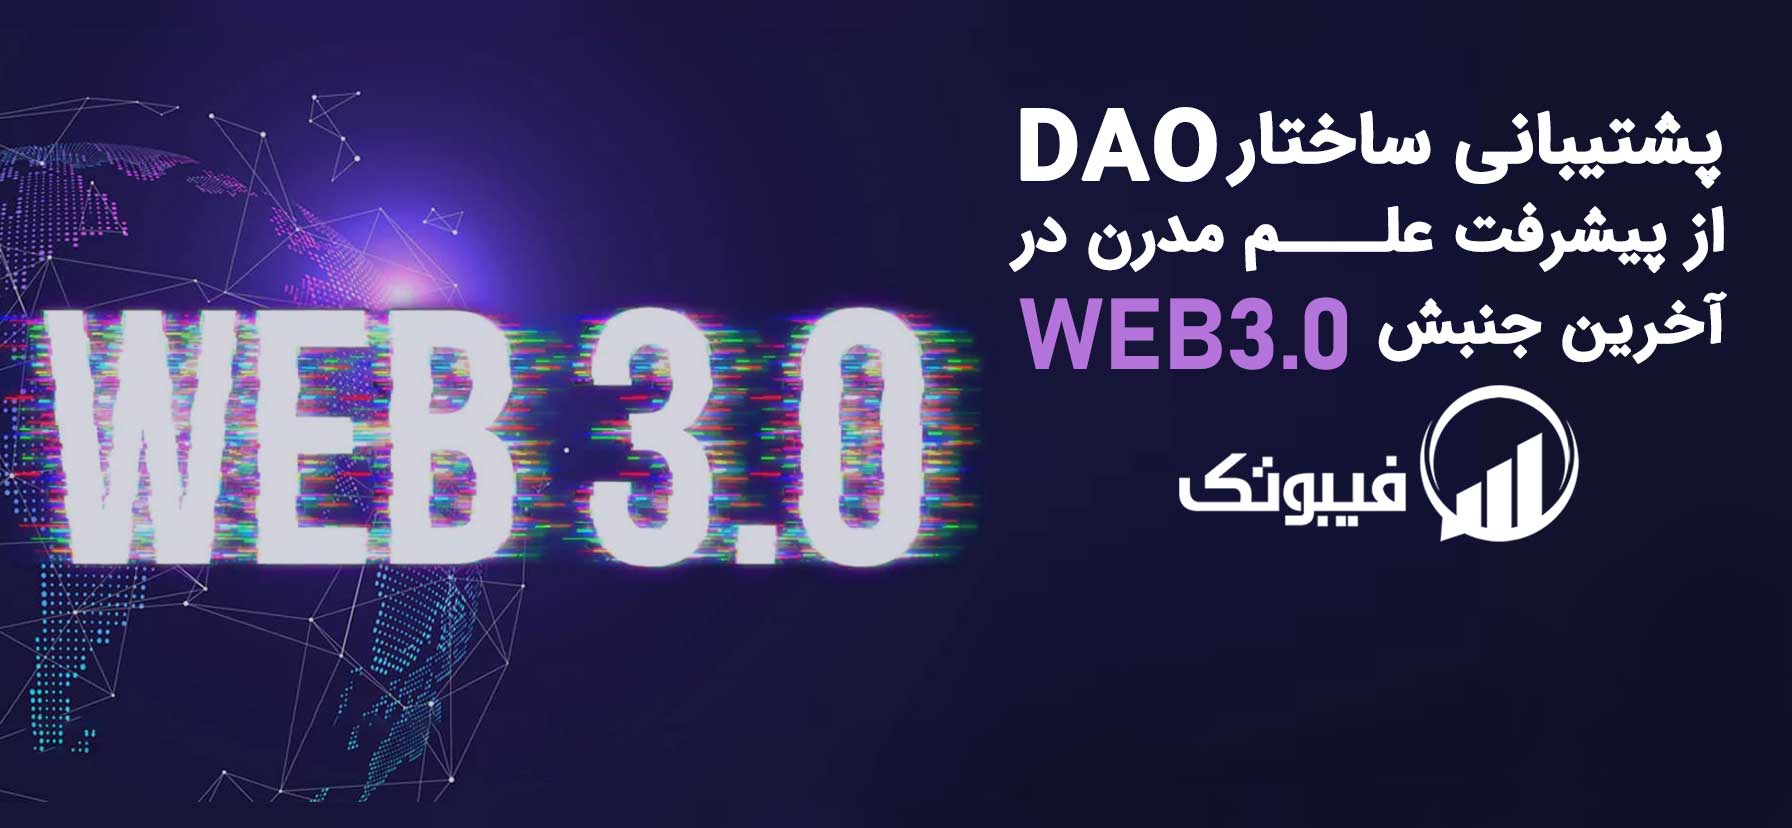 فیبوتک, پشتیبانی ساختار DAO از پیشرفت علم مدرن در آخرین جنبش Web3